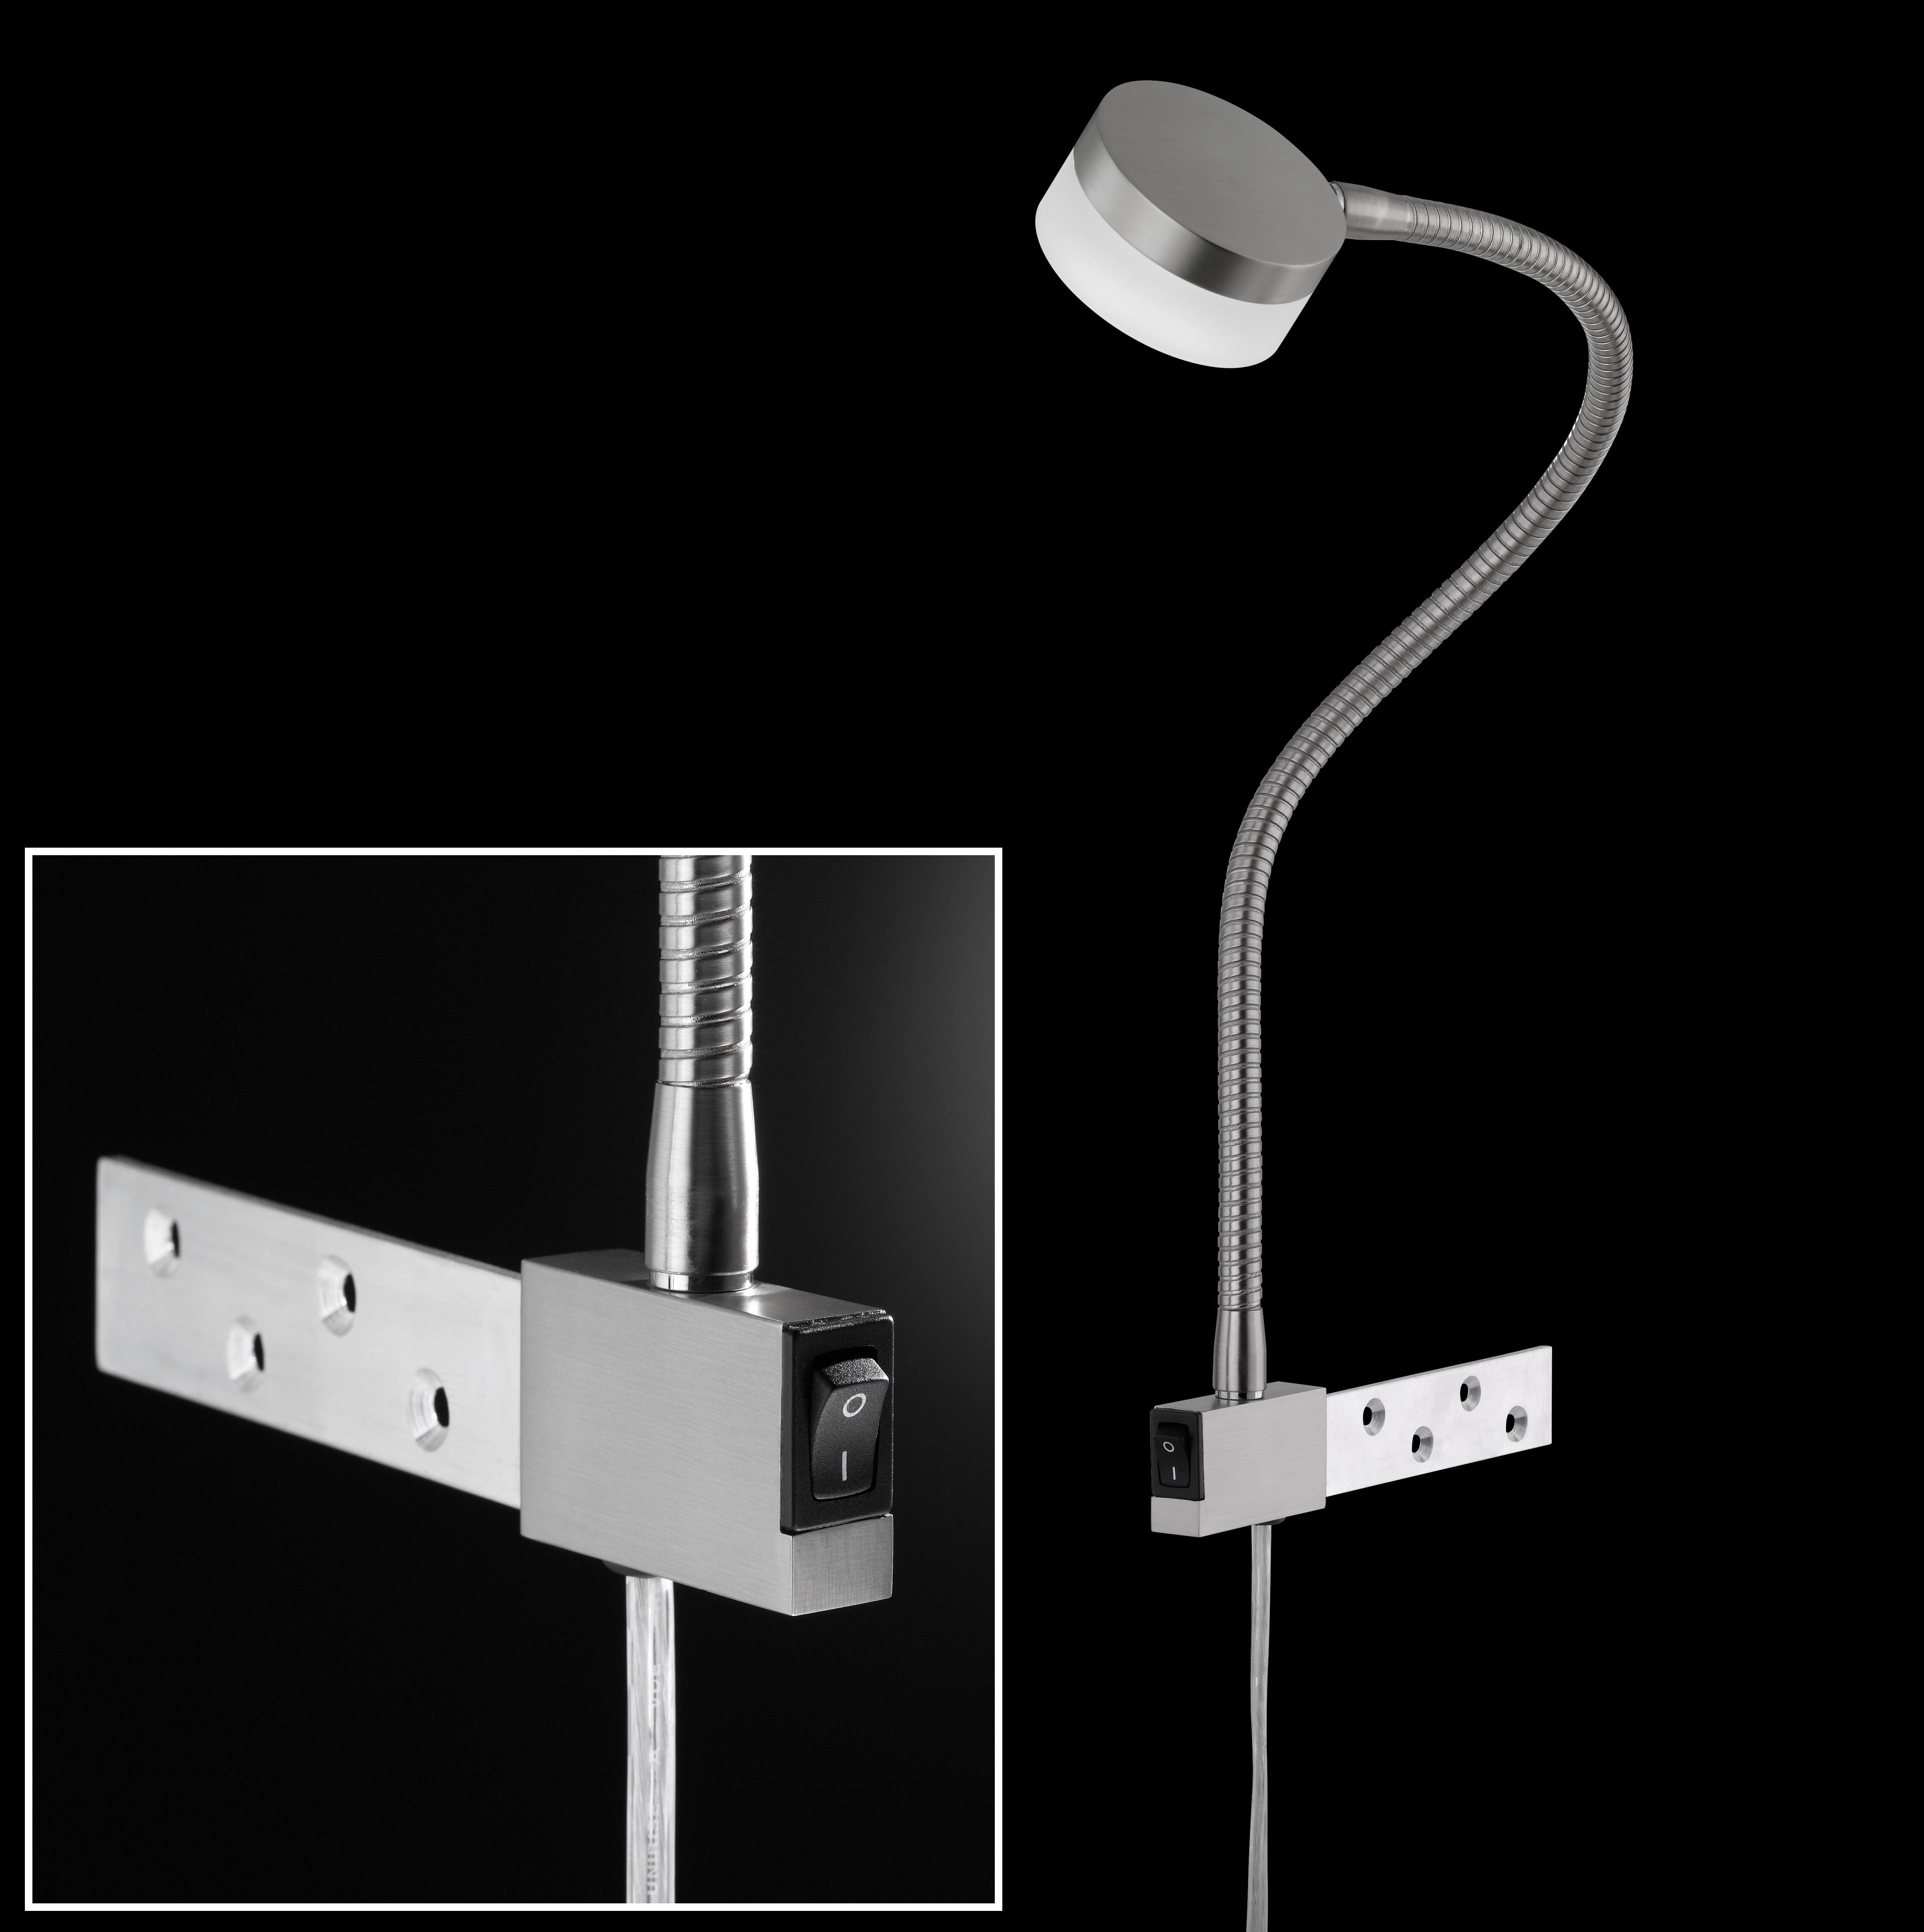 LED-WANDLEUCHTE LUG  - Weiß/Nickelfarben, KONVENTIONELL, Kunststoff/Metall (51cm) - Fischer & Honsel